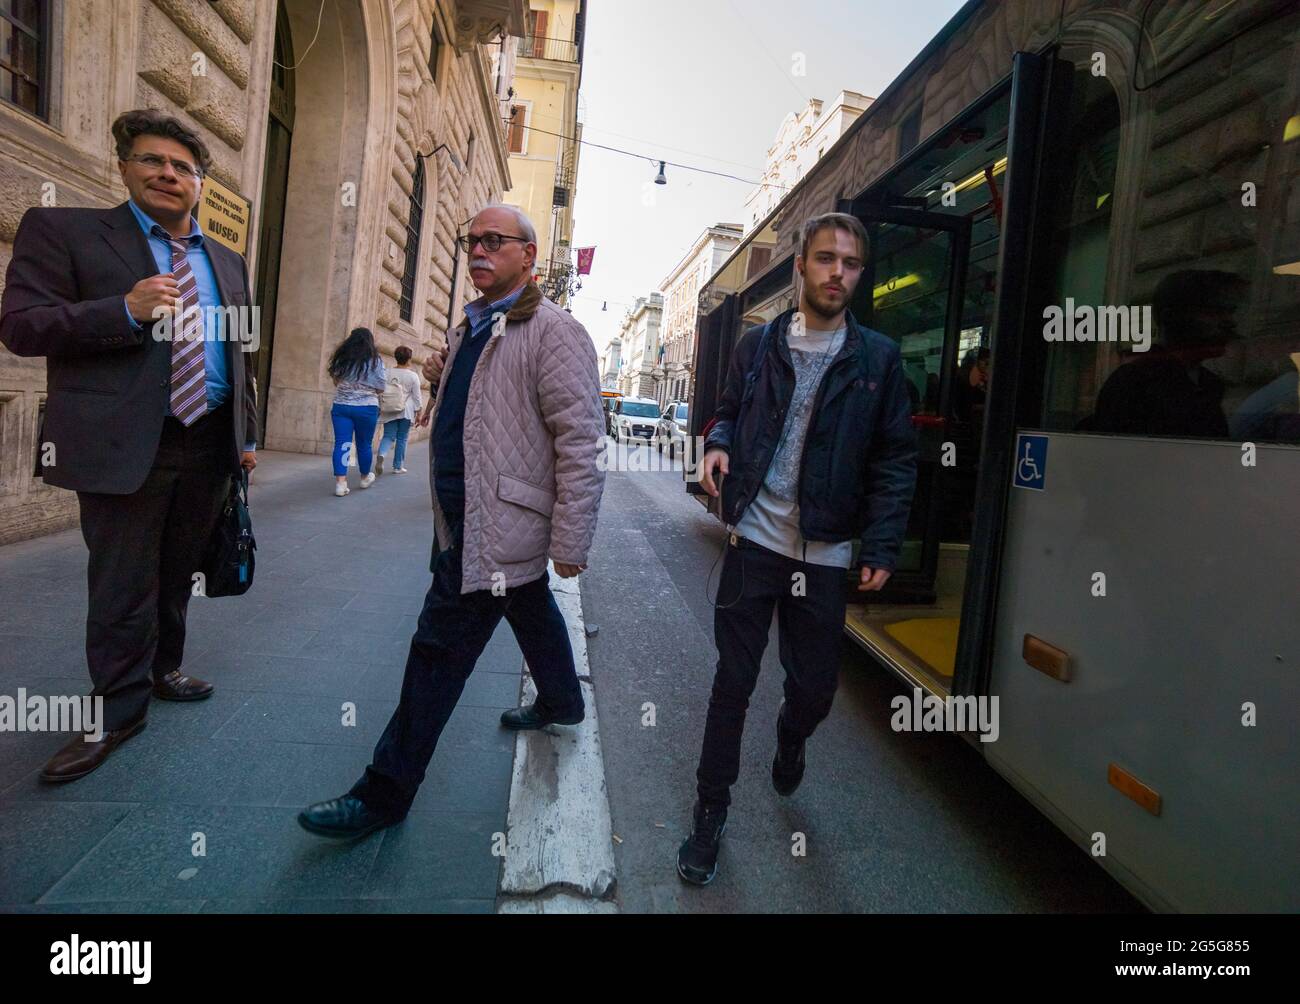 ROMA, ITALIA - APRILE 15 2018 : gli uomini scendano dall'autobus. Foto Stock